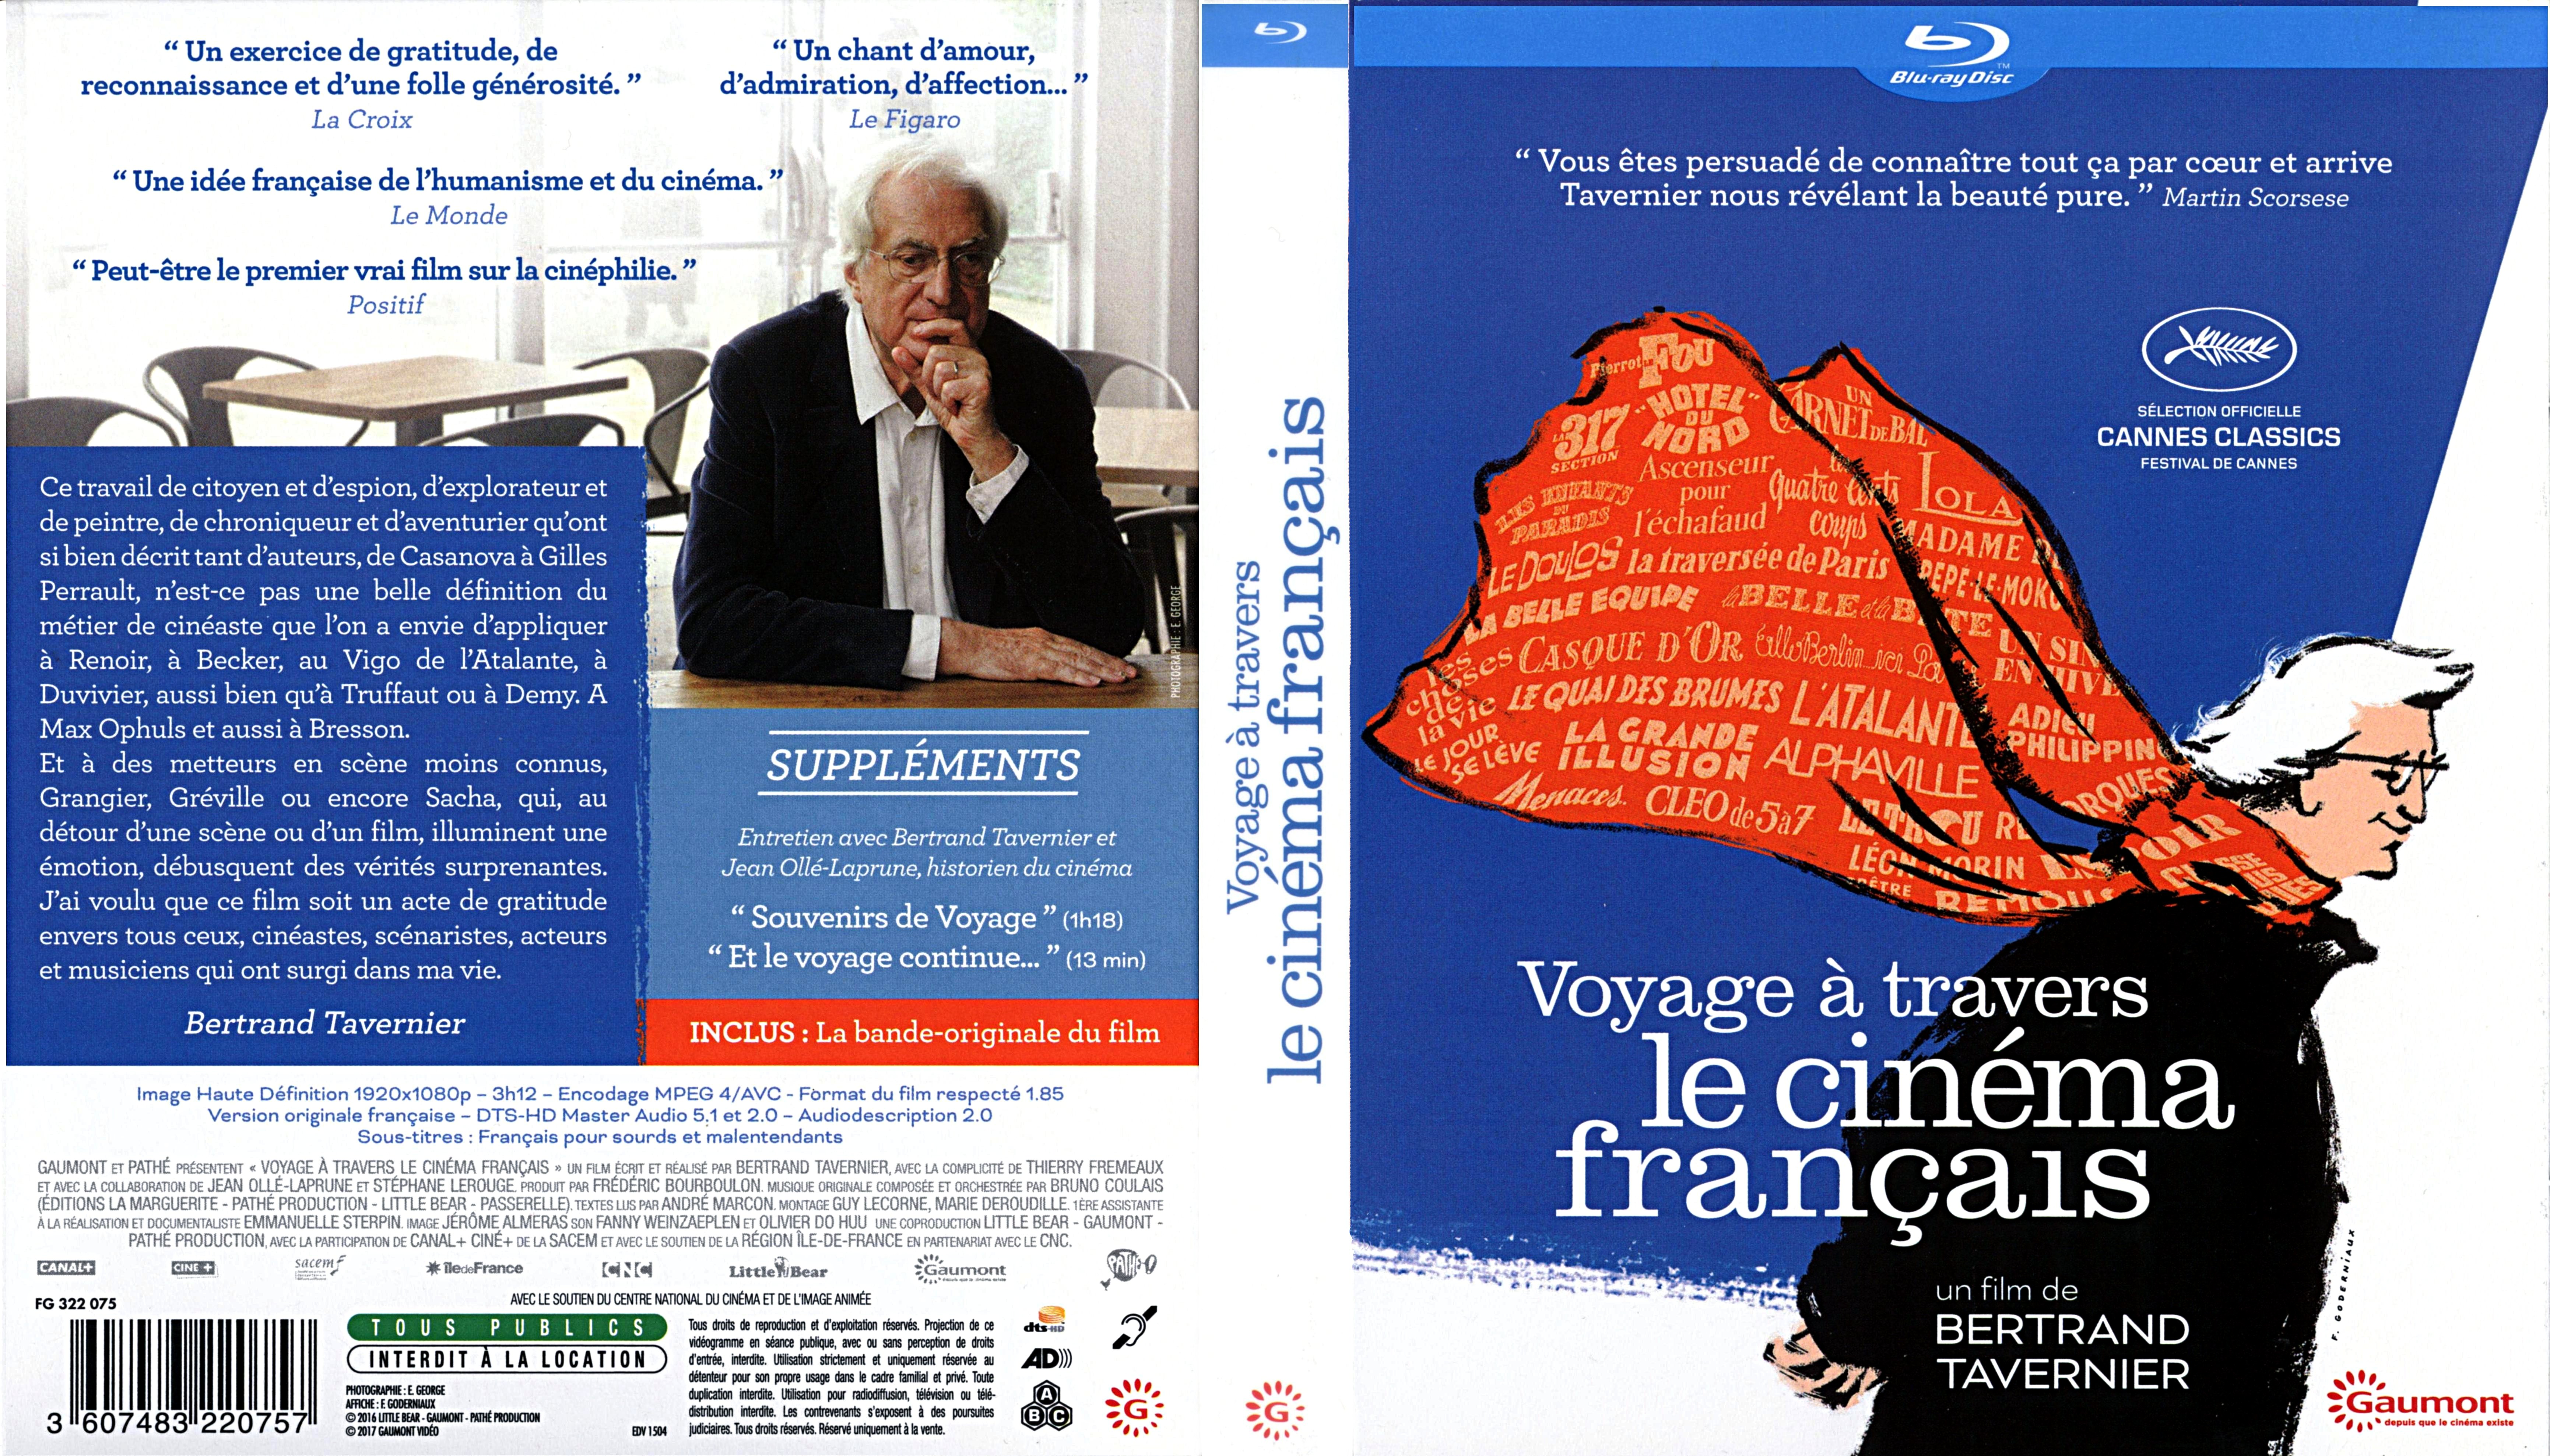 Jaquette DVD Voyage  travers le cinema francais (BLU-RAY)